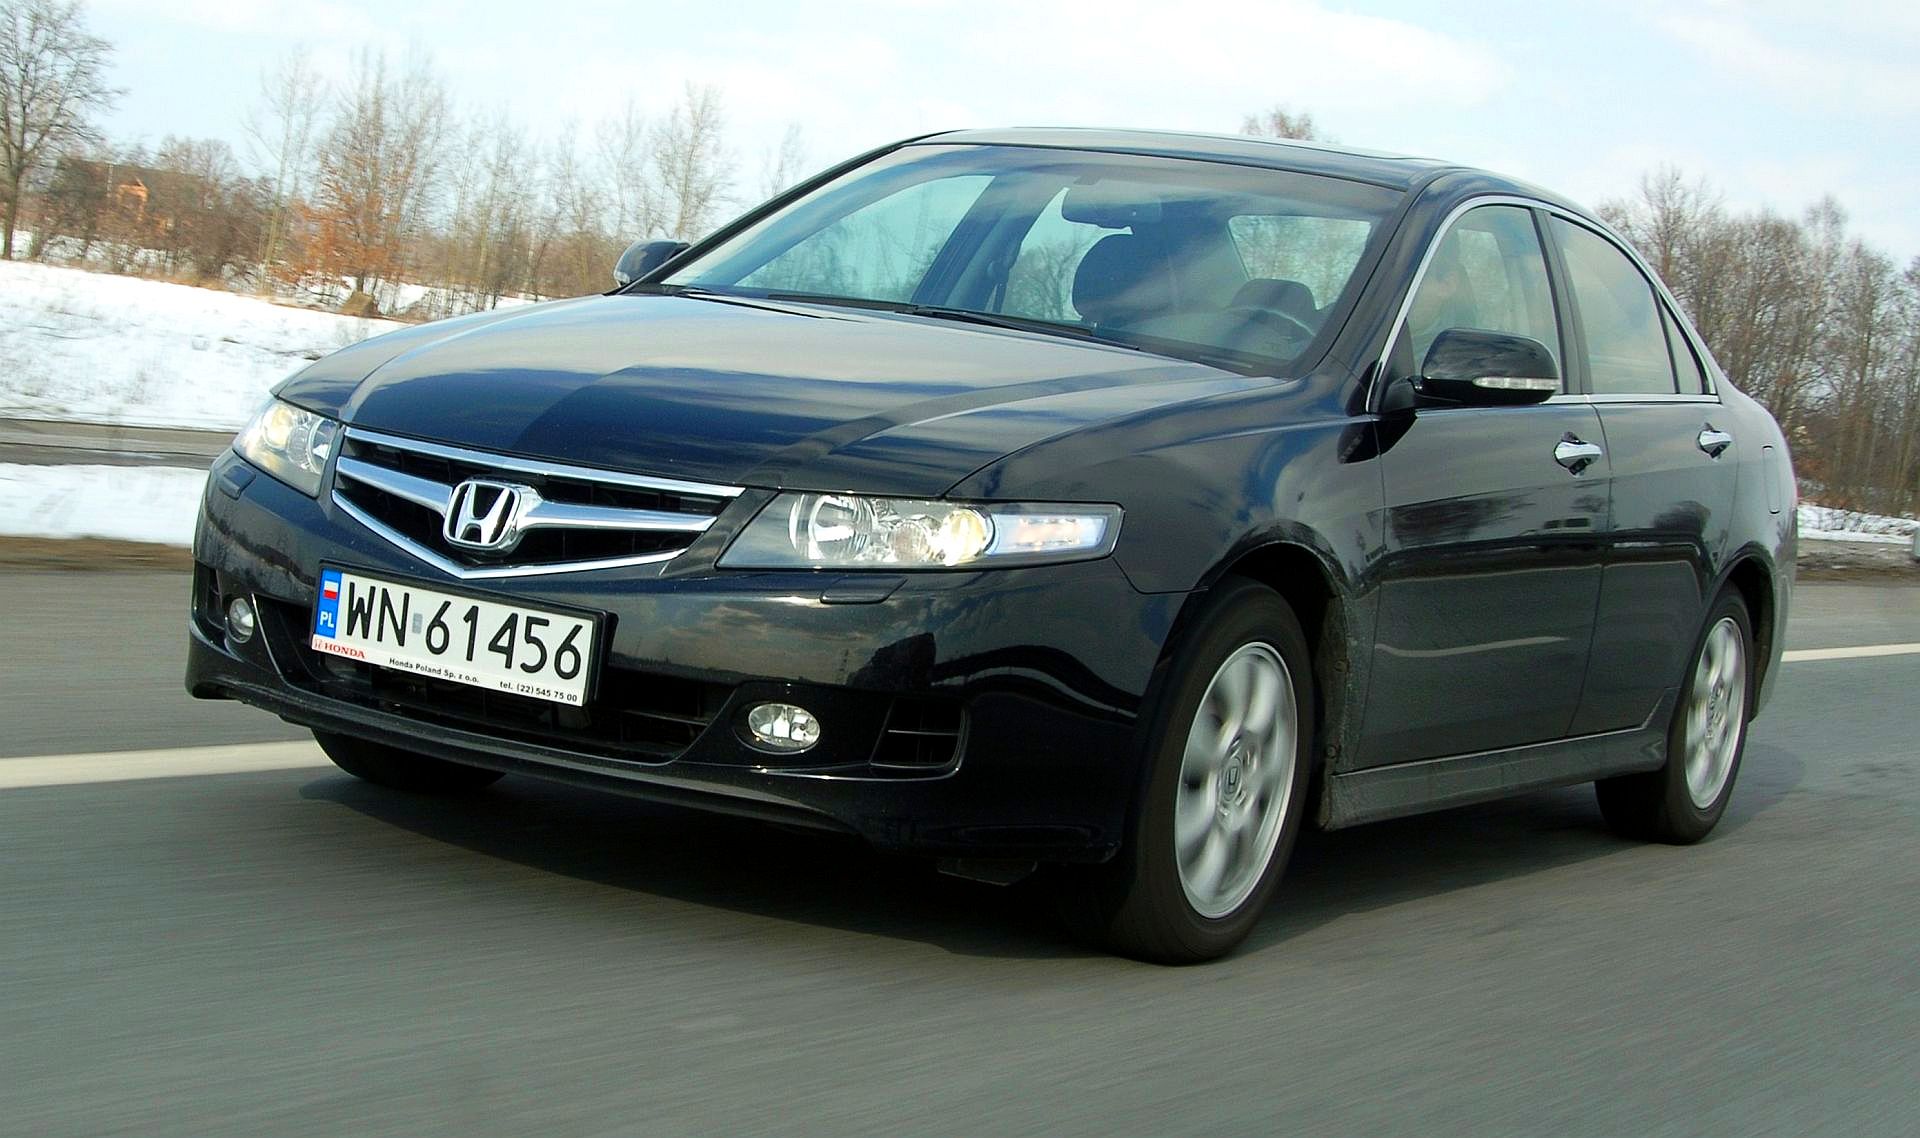 Używana Honda Accord Vii (2002-2008) - Opinie, Dane Techniczne, Usterki